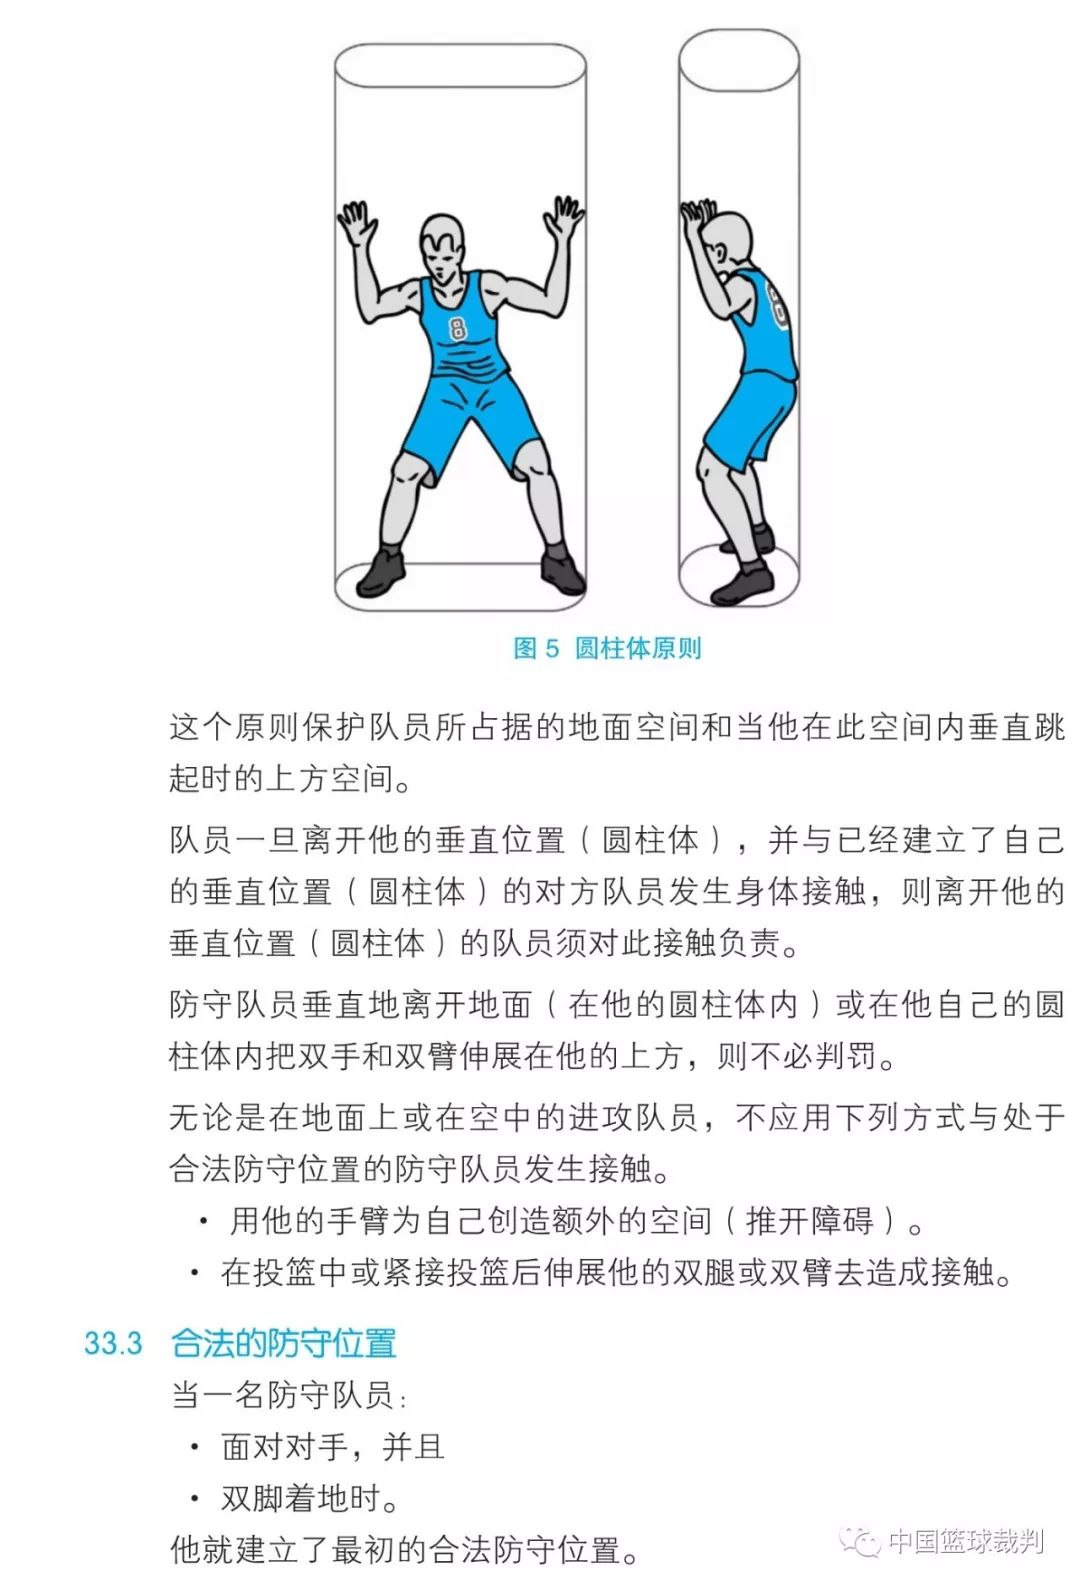 篮球打手犯规规则图解图片